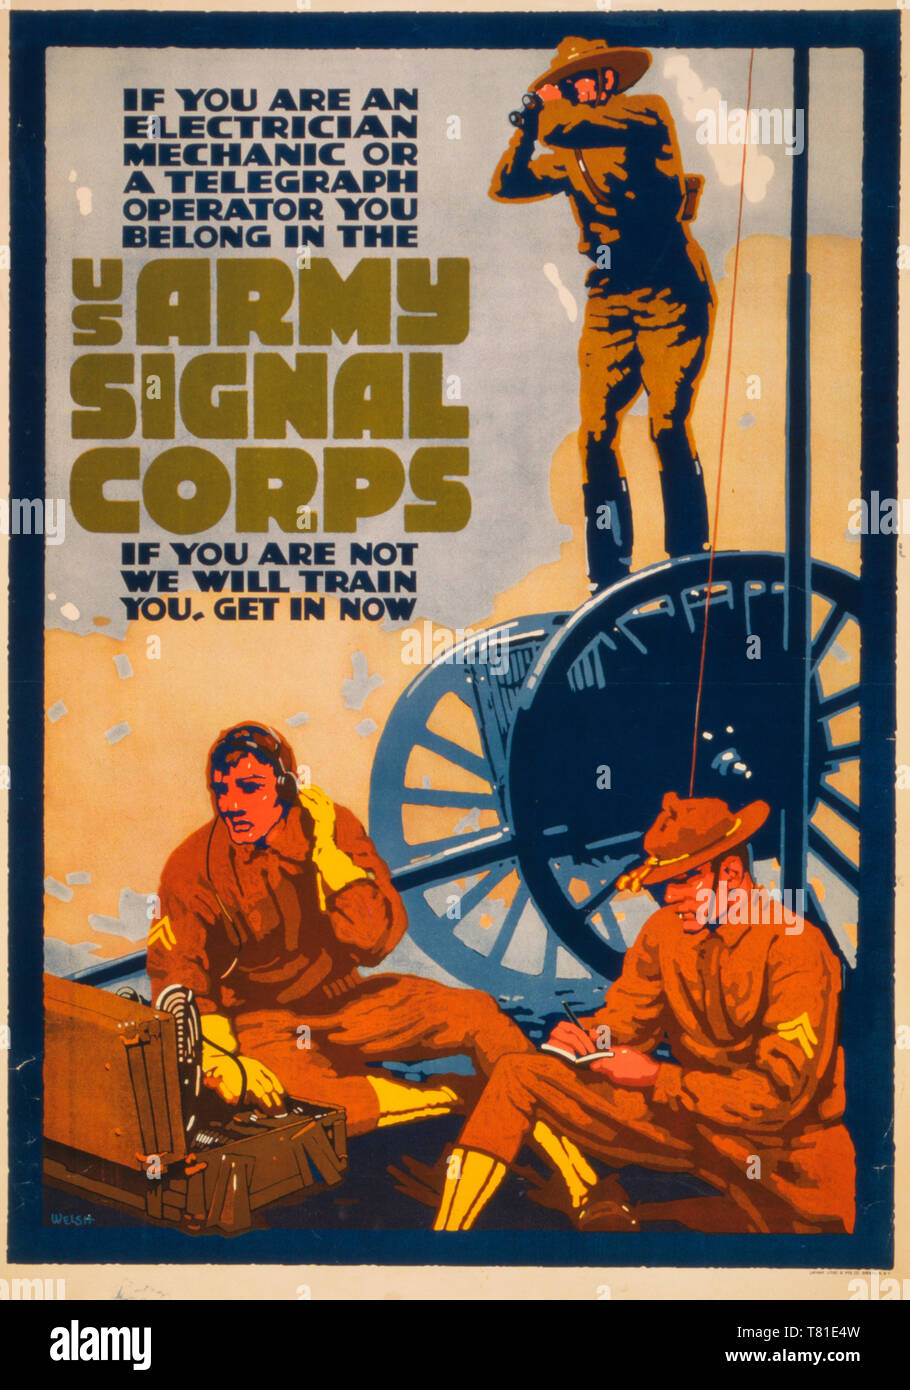 Us Army Signal Corps recruiting Poster mit drei Soldaten mit verschiedenen Methoden der Kommunikation und der Informationsbeschaffung. Wenn Sie einen Elektriker, Mechaniker oder ein fernschreiberoperator gehören sie in der U.S. Army Signal Corps Wenn Sie sind nicht wir sie ausbilden, erhalten jetzt, circa 1919 Stockfoto